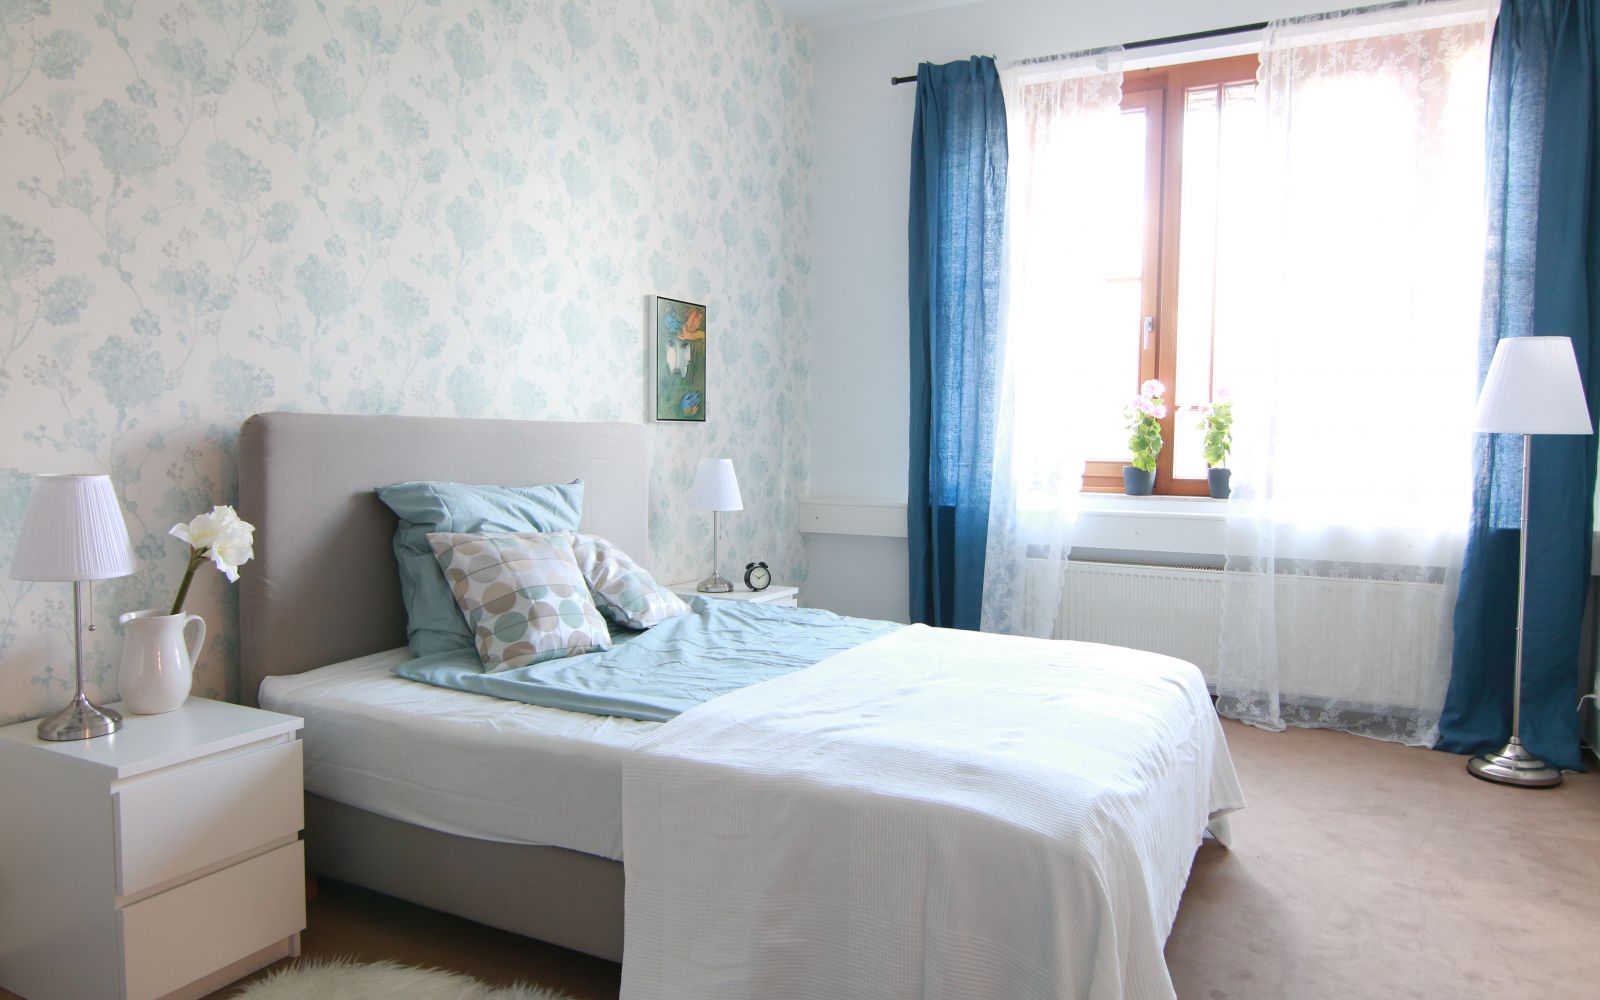 Graues Bett vor weiß-blauer Wand und hellen Möbeln. Dunkelblaue Vorhänge vor dem Fenster.